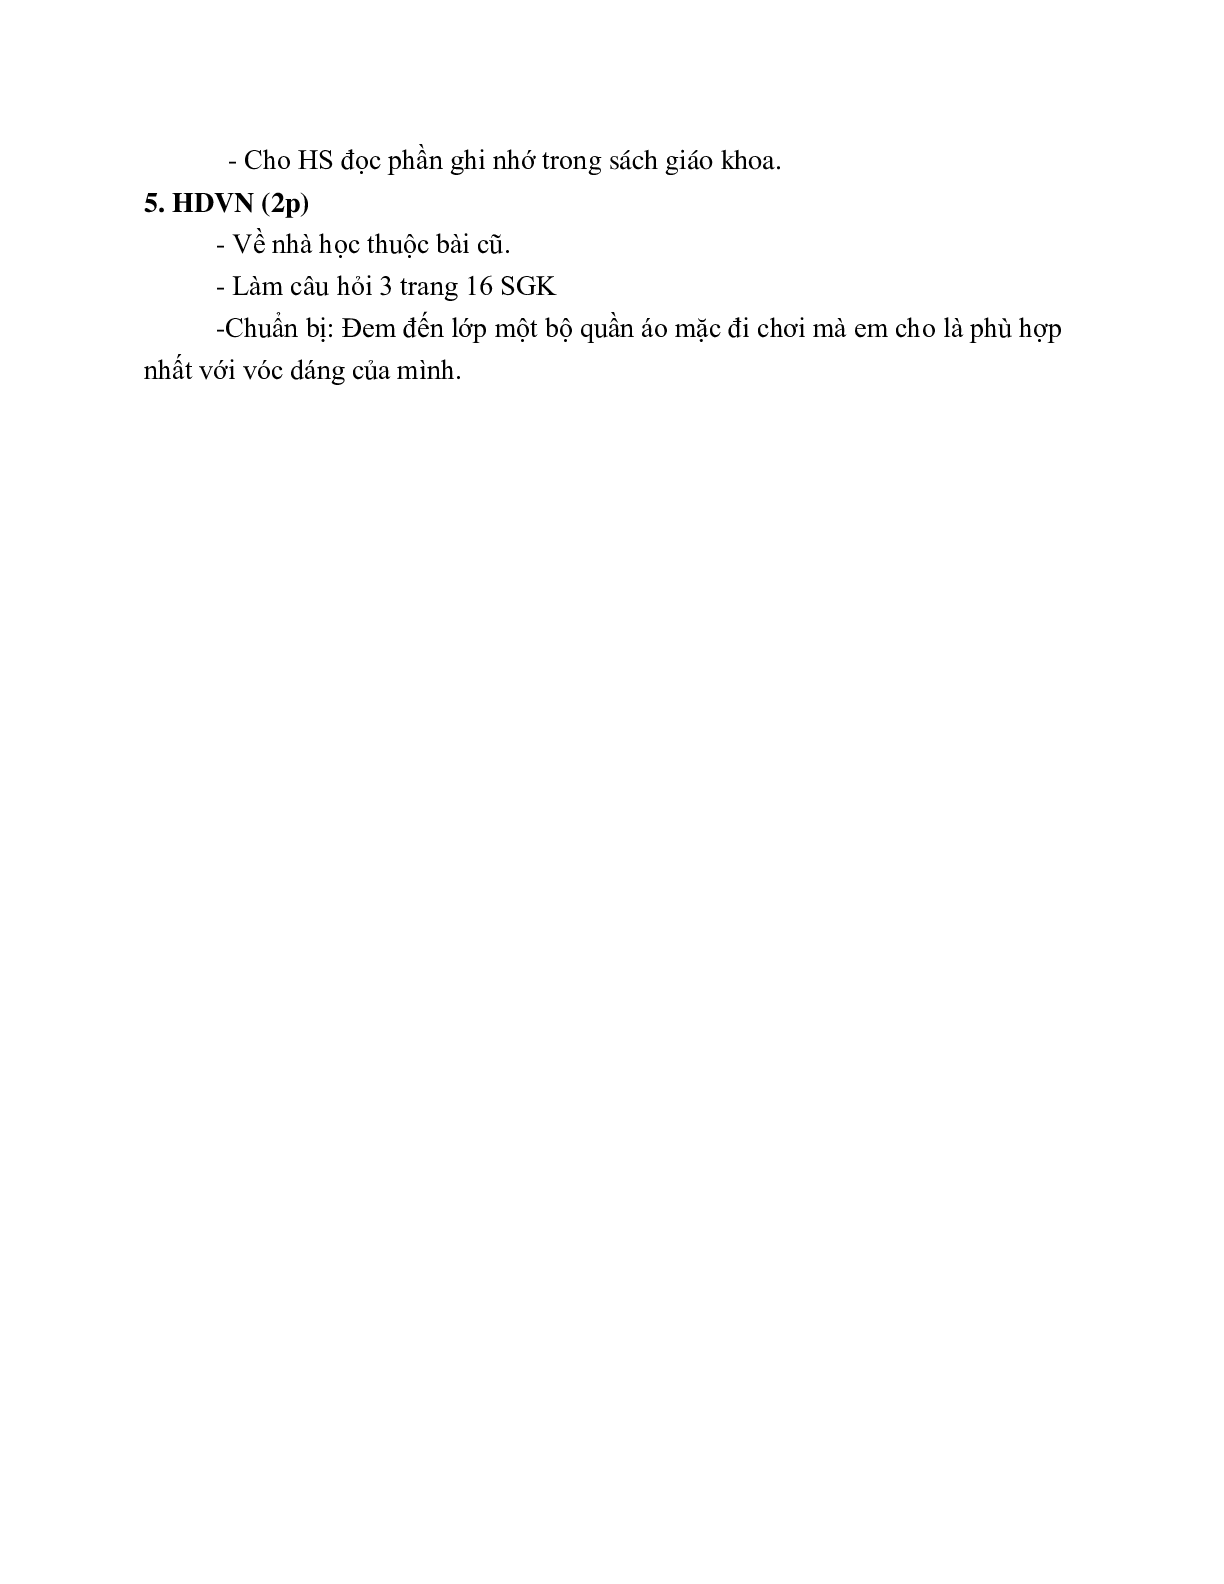 GIÁO ÁN CÔNG NGHỆ 6 BÀI 2: LỰA CHỌN TRANG PHỤC (T3) MỚI NHẤT – CV5555 (trang 4)